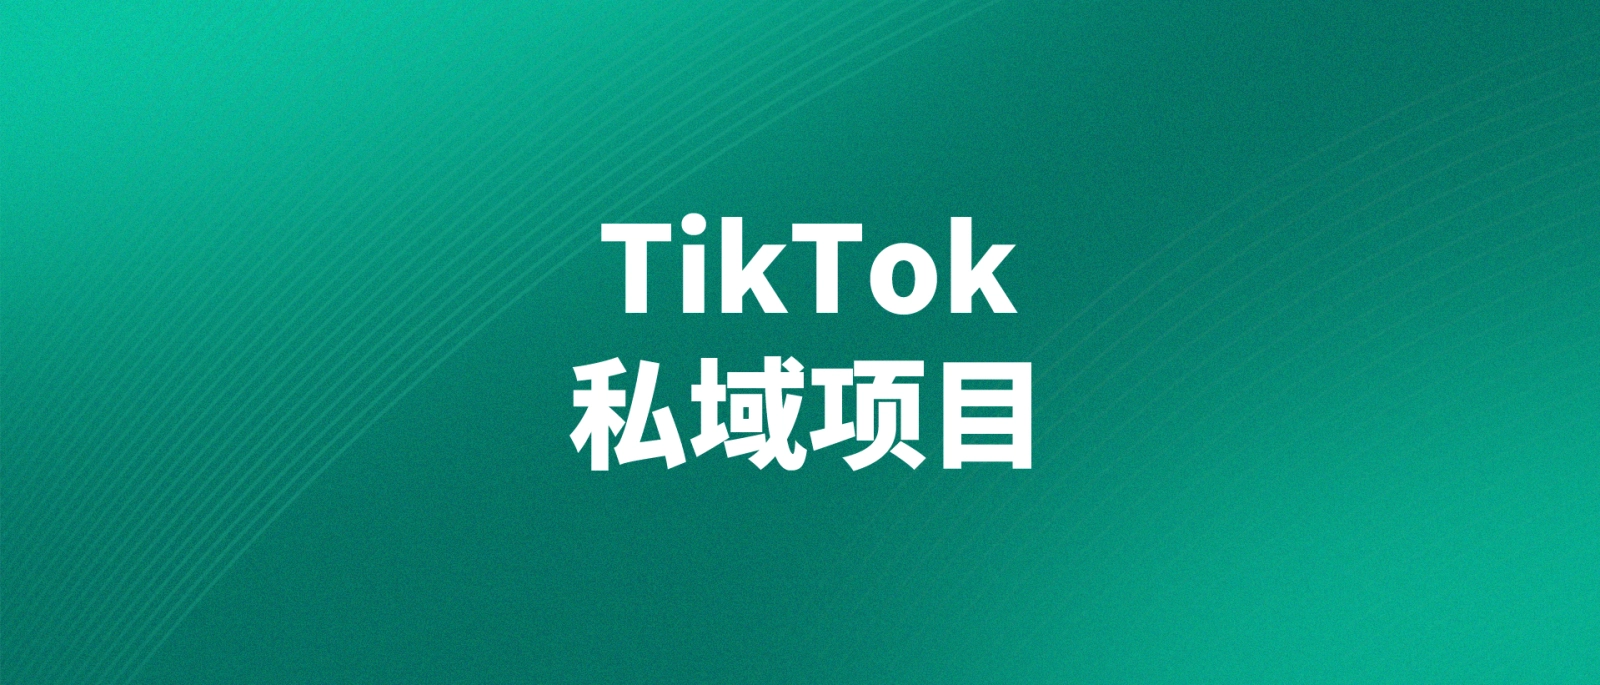 通过TikTok平台引流私域，单日转化变现2500-10000元的实操指南-格赚网_靠谱的互联网创业品牌 | 商业思维-格赚网_靠谱的互联网创业品牌 | 商业思维